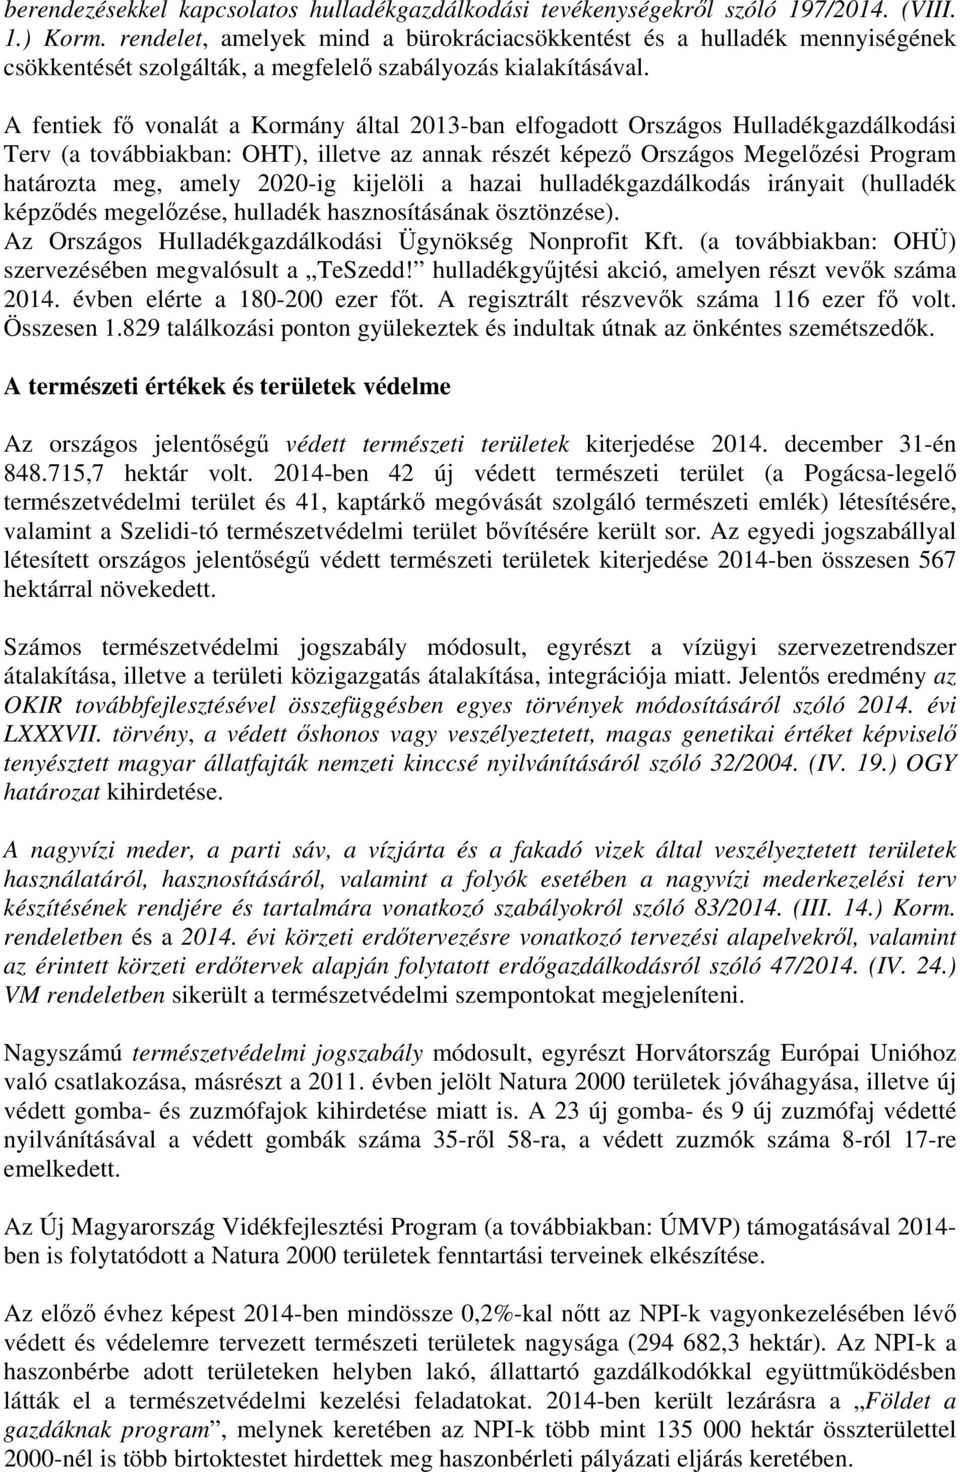 A feniek fő vonalá a Kormány álal 2013-ban elfogado Országos Hulladékgazdálkodási Terv (a ovábbiakban: OHT), illeve az annak részé képező Országos Megelőzési Program haároza meg, amely 2020-ig